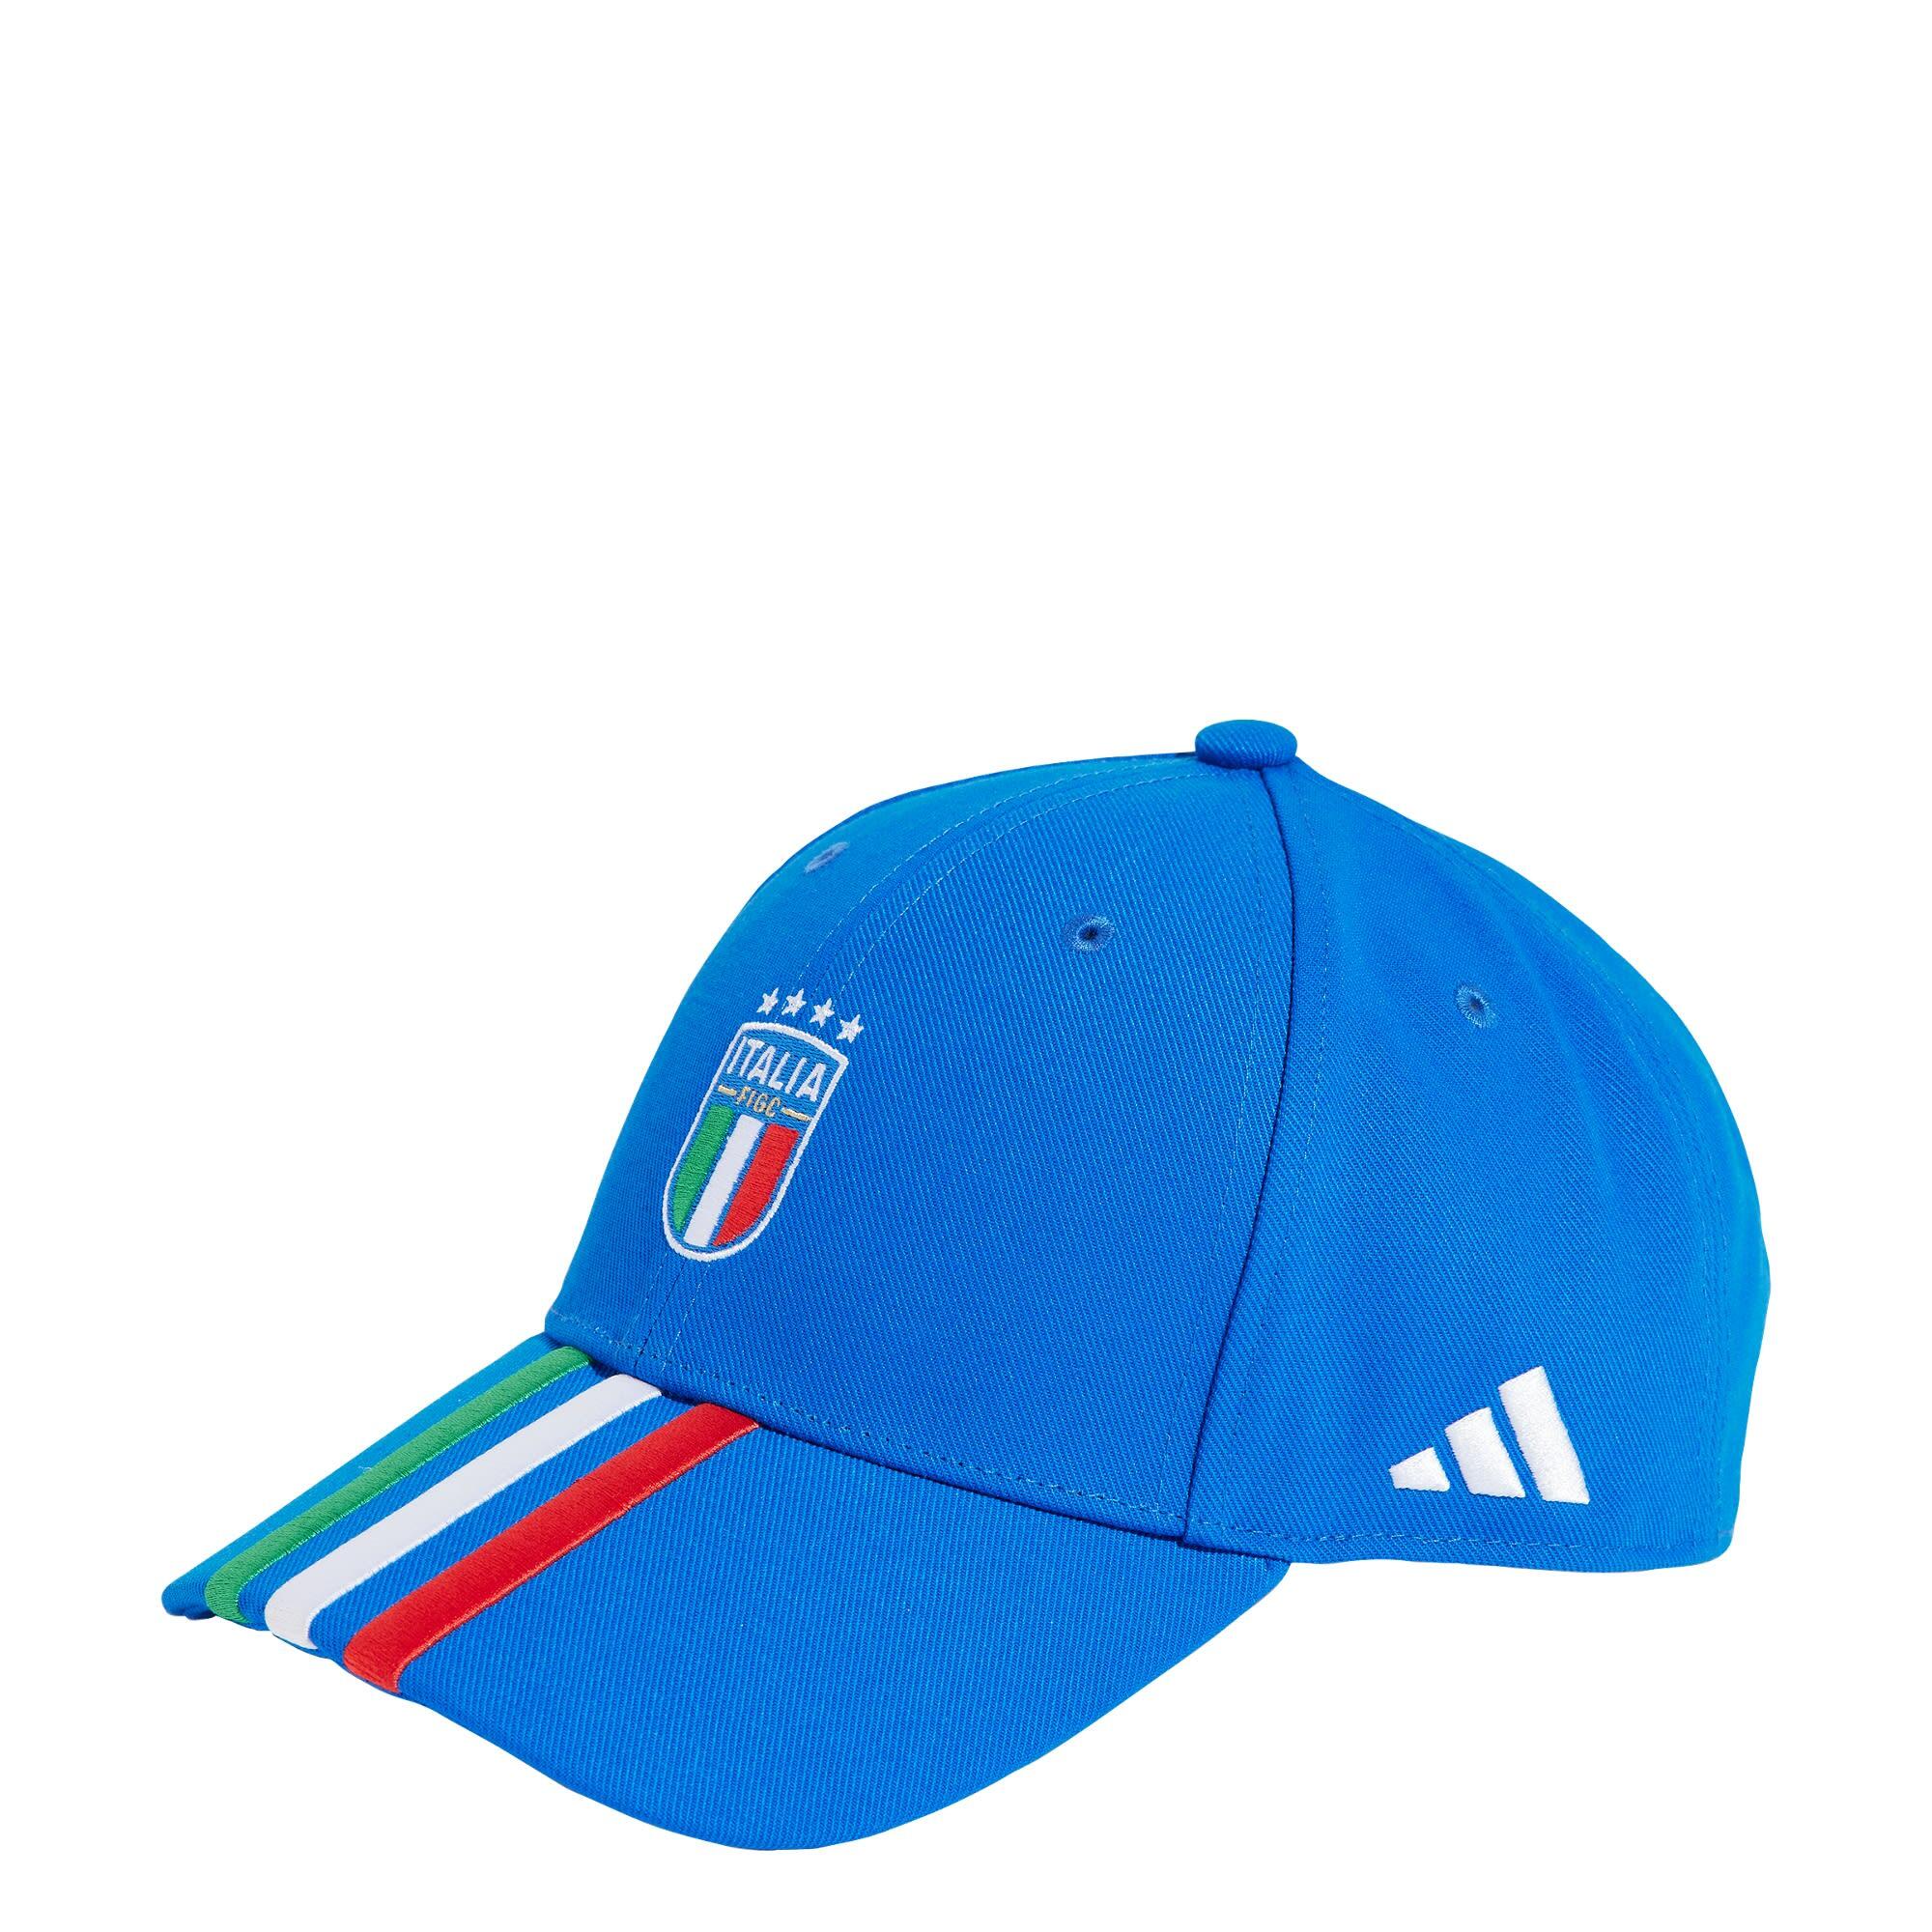 ADIDAS Italy Football Cap